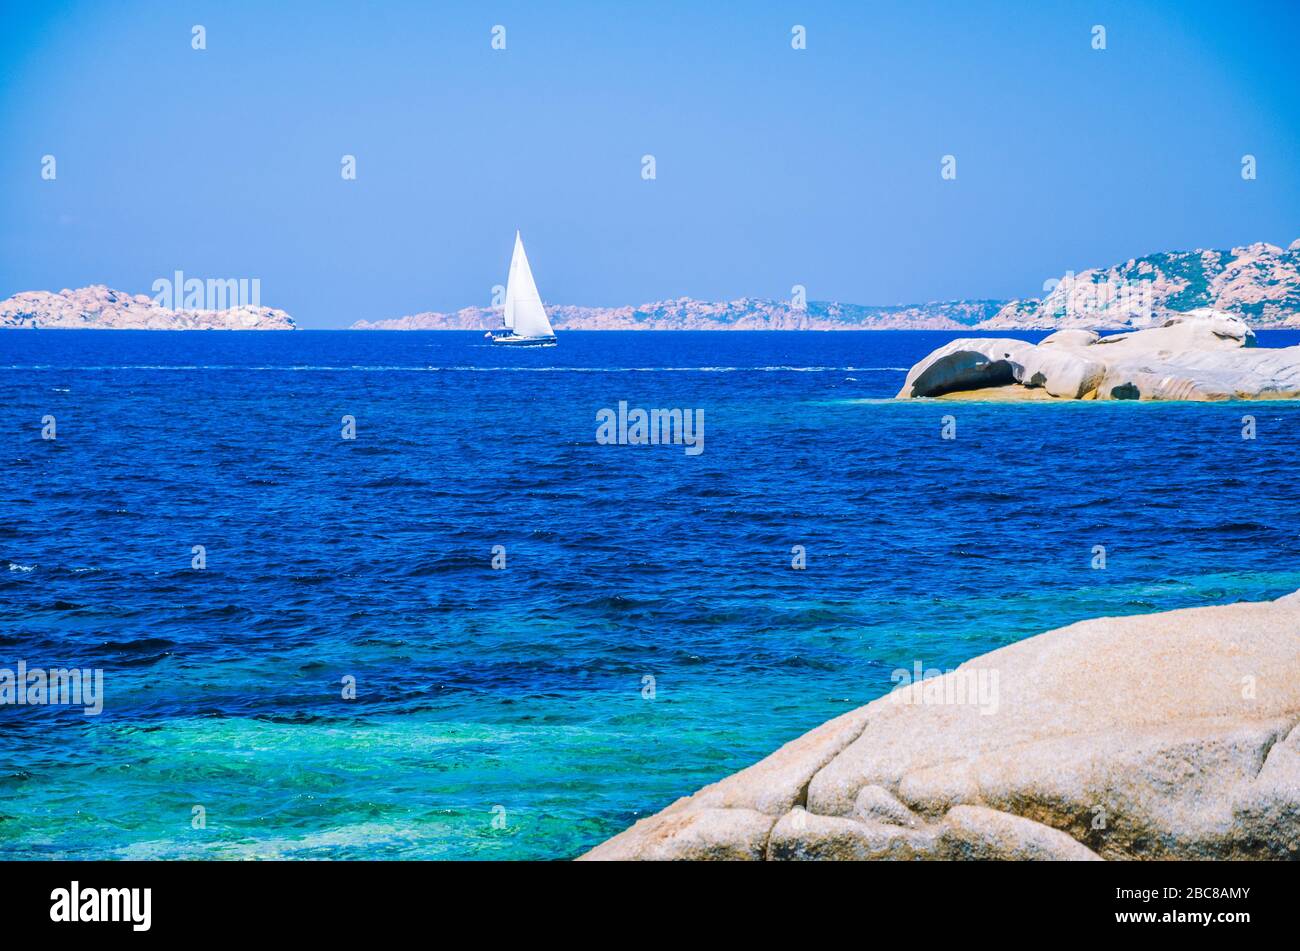 White sailboat, yacht between granite rocks in sea, amazing azure water, Sardinia, Italy. Stock Photo